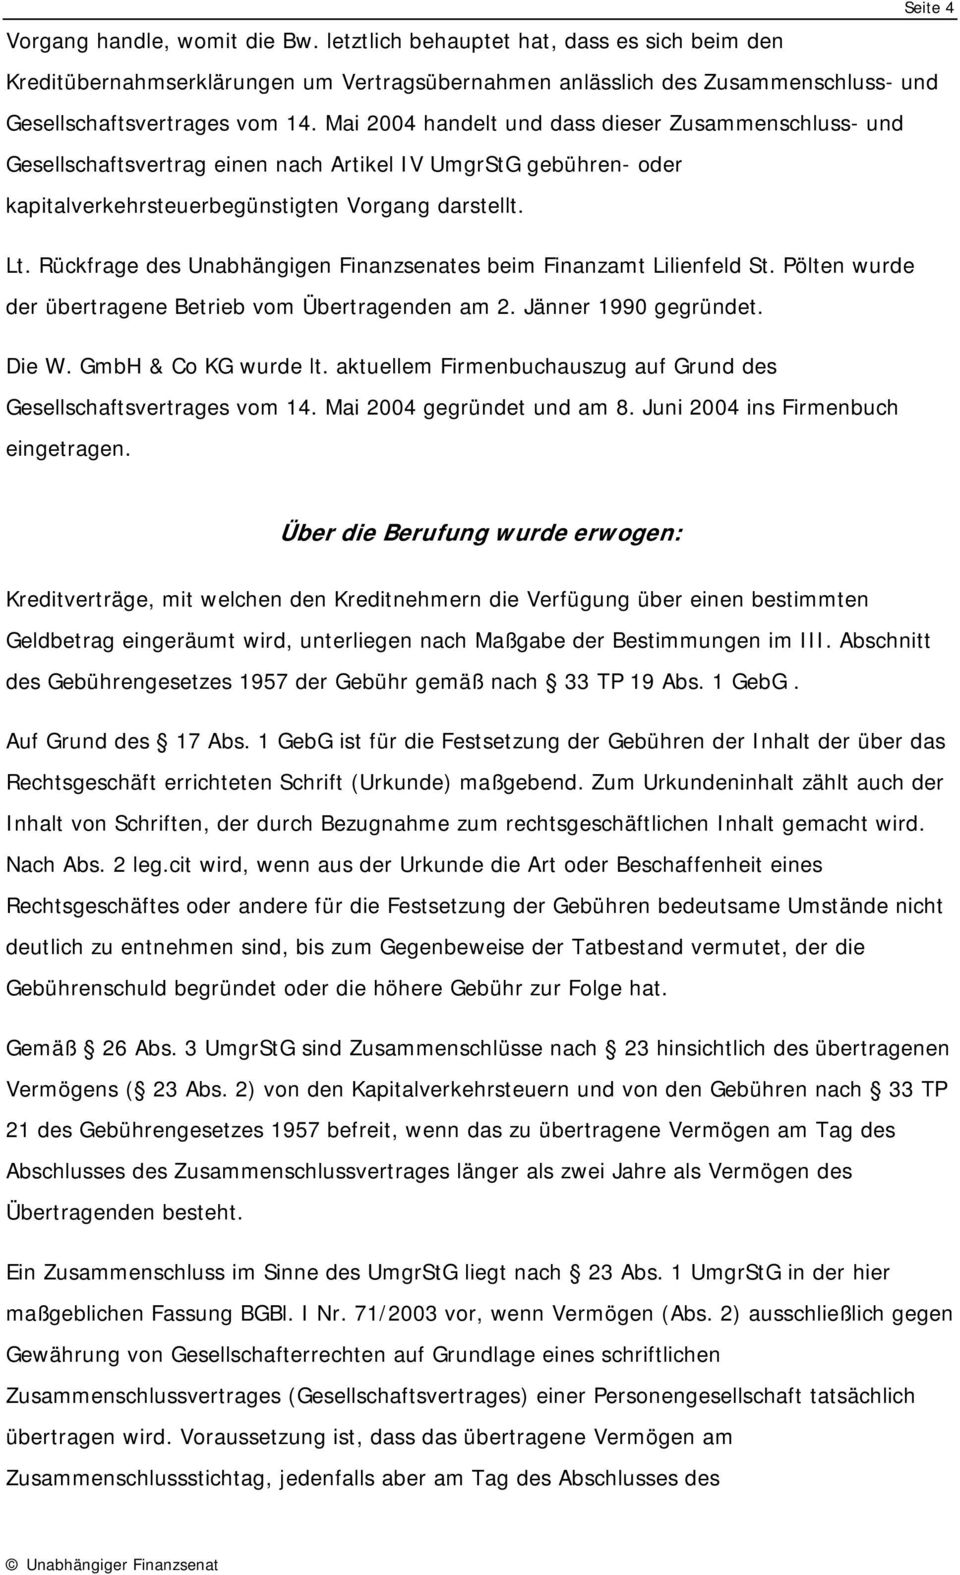 Rückfrage des Unabhängigen Finanzsenates beim Finanzamt Lilienfeld St. Pölten wurde der übertragene Betrieb vom Übertragenden am 2. Jänner 1990 gegründet. Die W. GmbH & Co KG wurde lt.